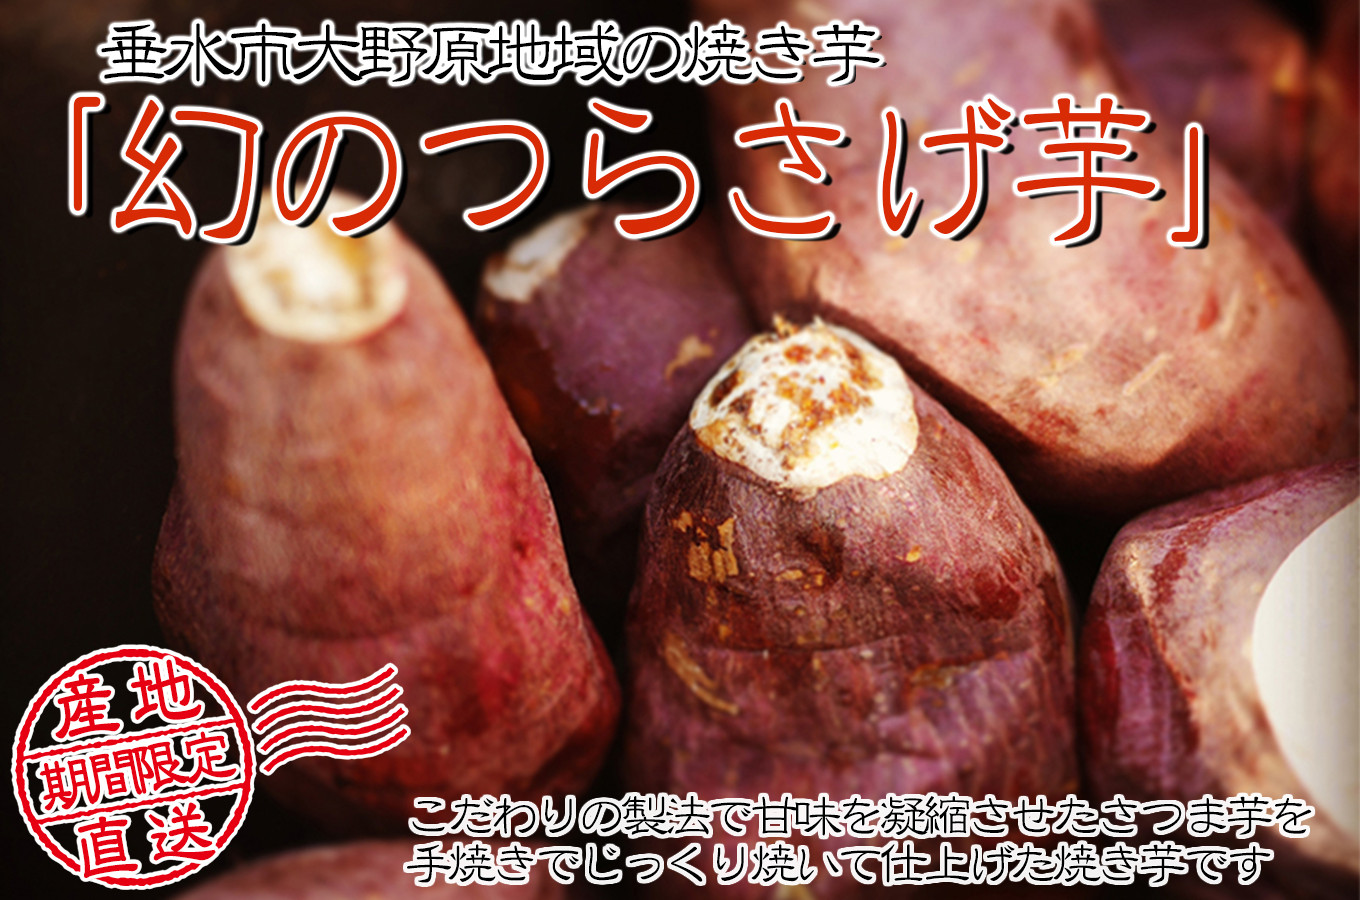 鹿児島県垂水市の つらさげ芋 予約受付開始 例年早期品切れとなりますお申し込みはお早目に ふるさと納税 ふるさとチョイス